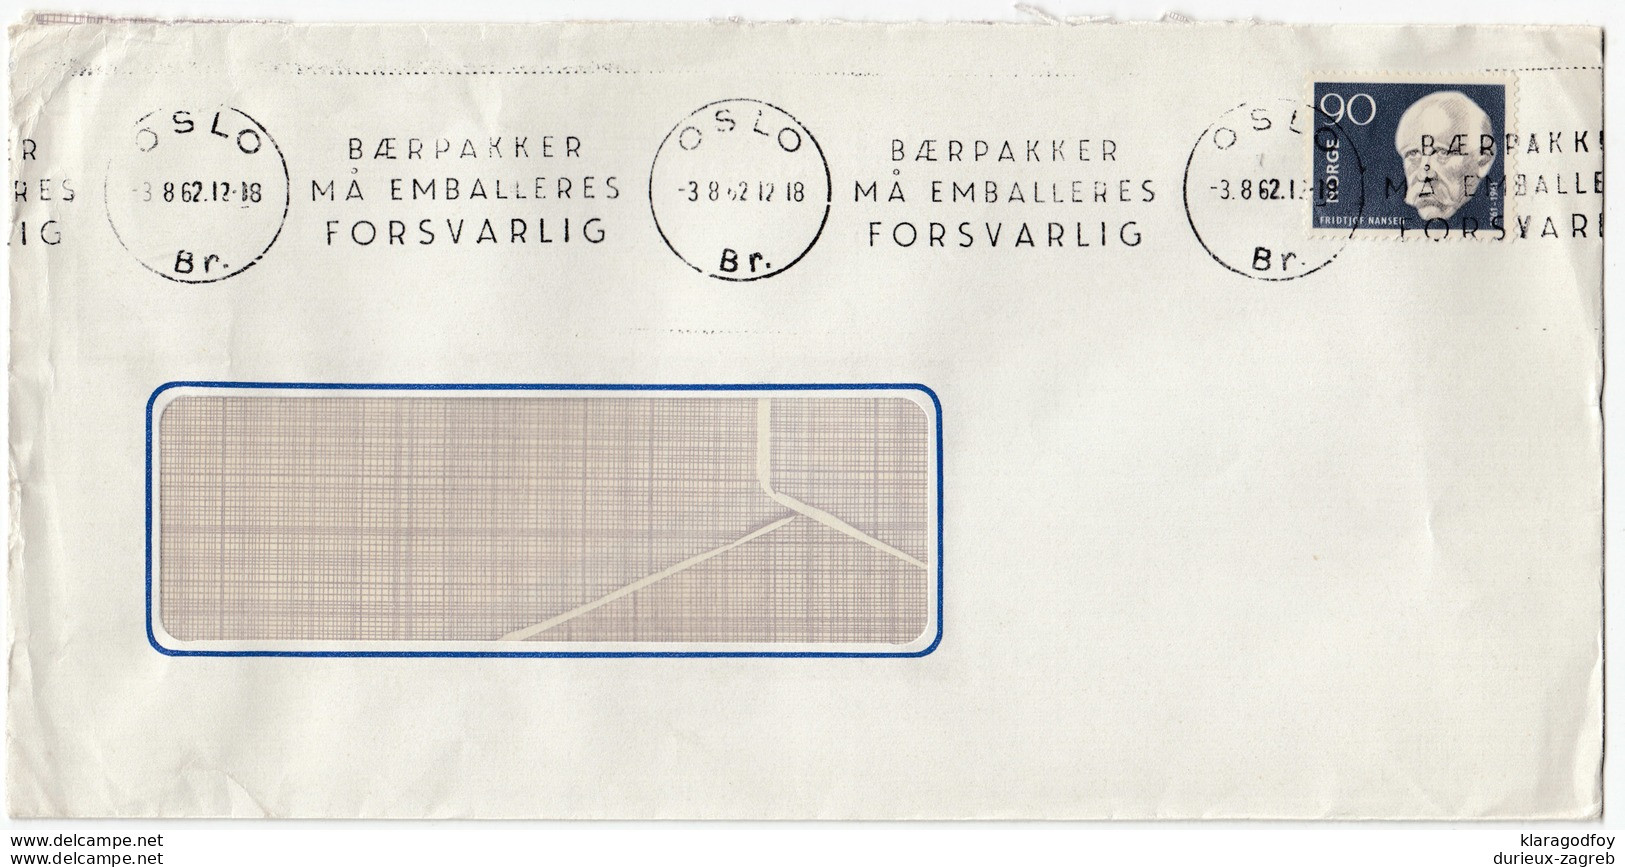 Baerpakker Ma Emalleres Forsvarlig Slogan Postmark On Letter Cover Travelled 1962  Bb161210 - Cartas & Documentos